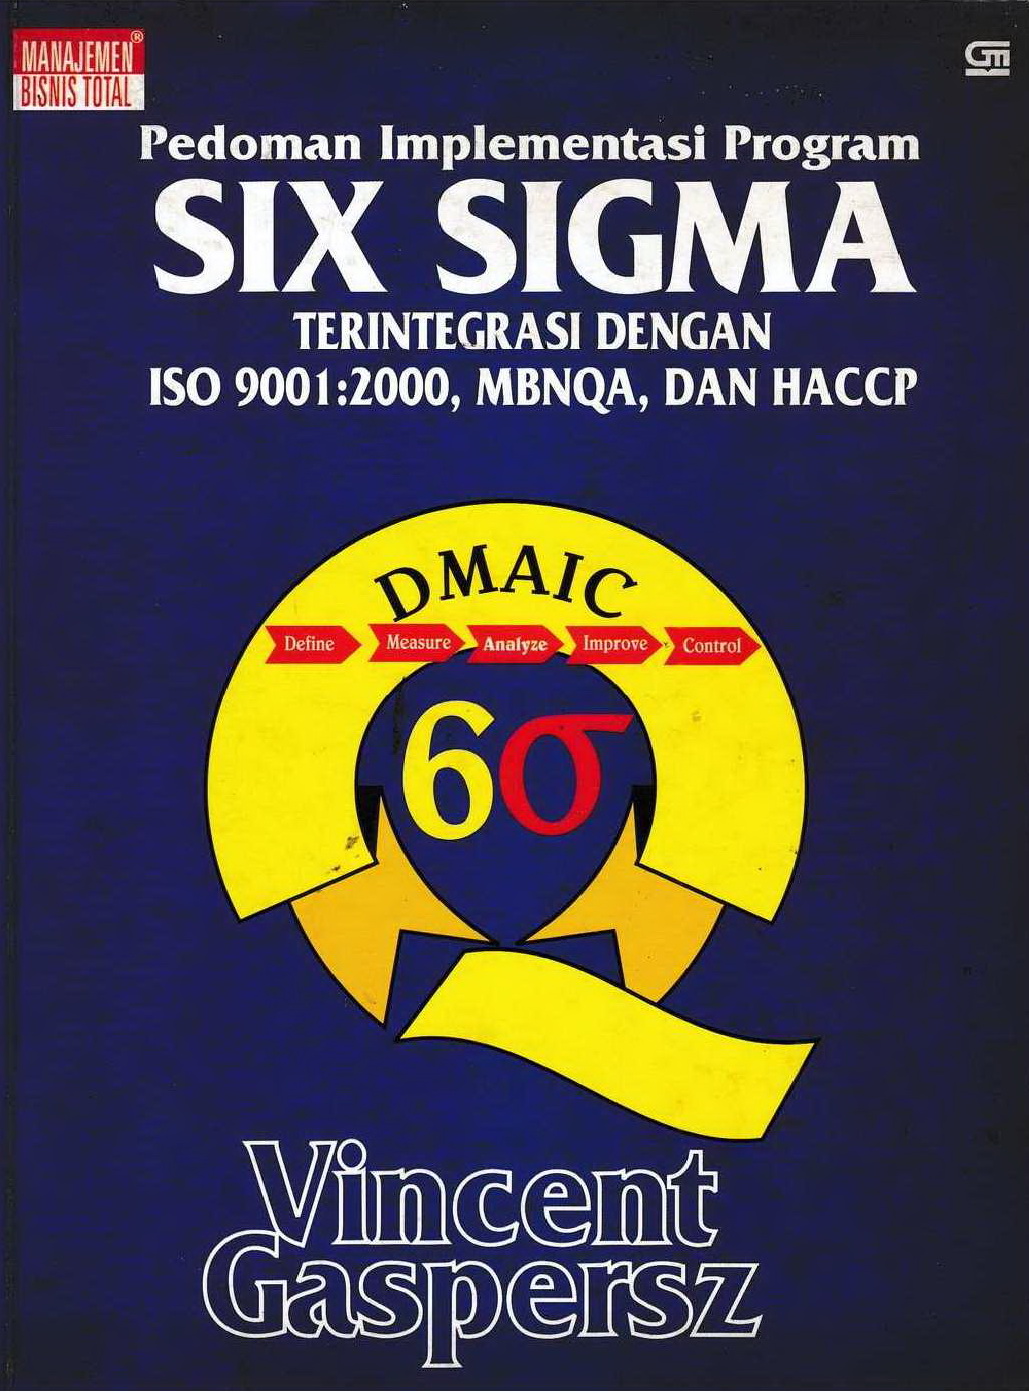 2002 Pedoman Implementasi Program Six Sigma Terintegrasi Dengan ISO 9001-2000, MBNQA, dan HACCP VG